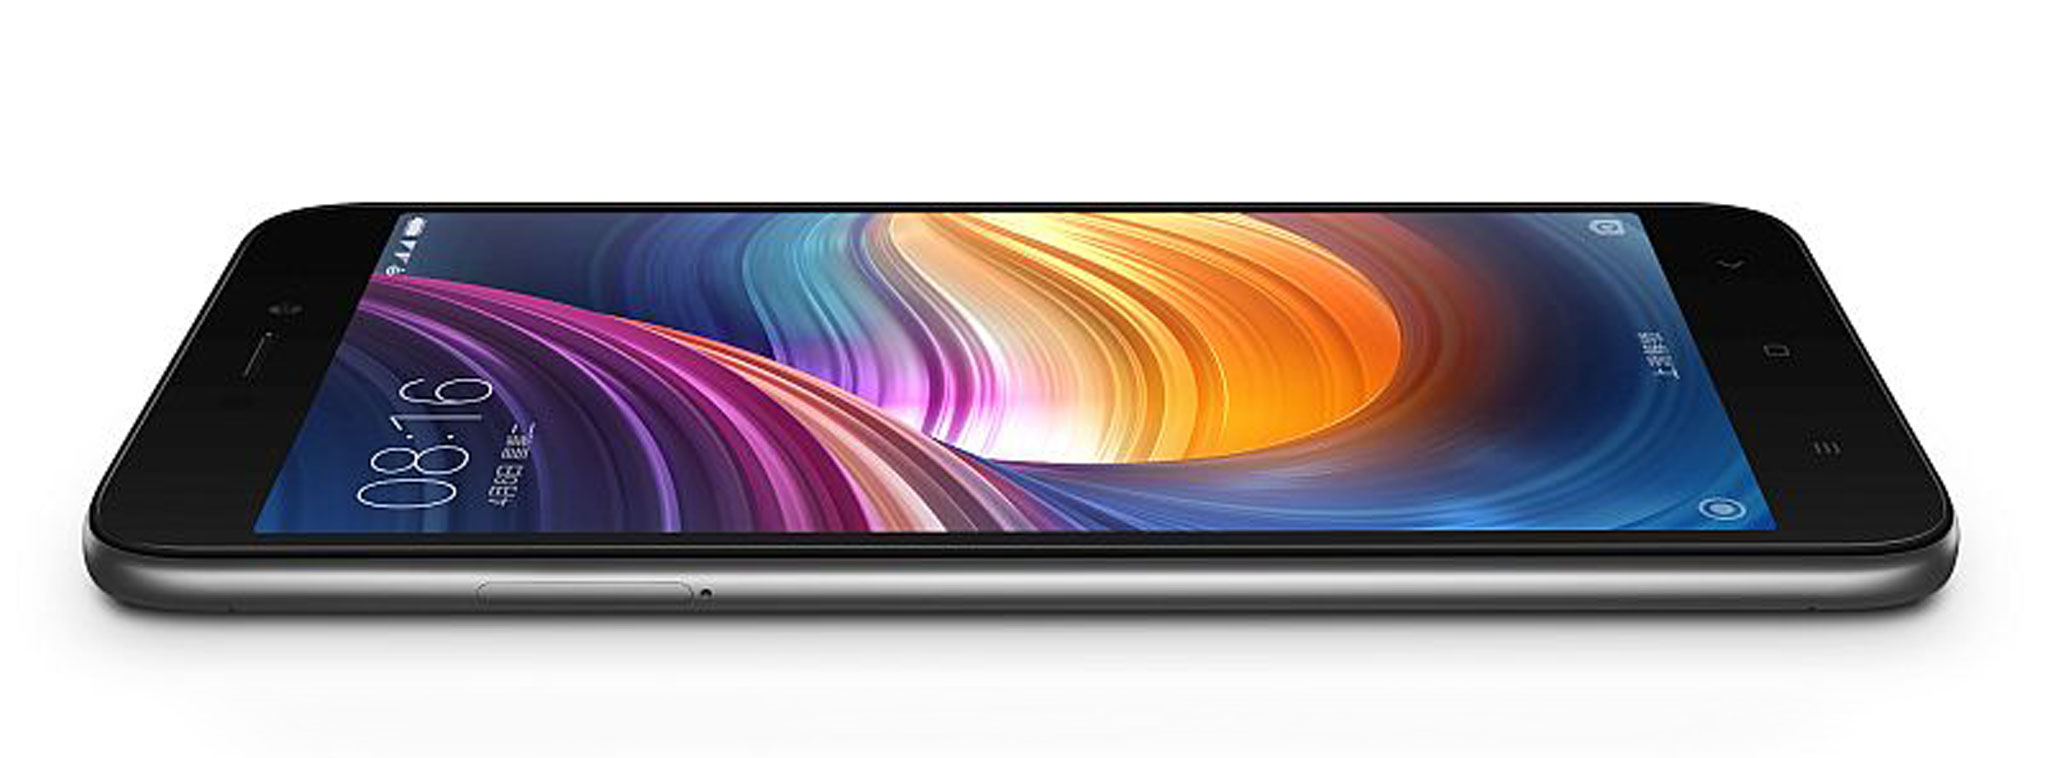 Xiaomi Redmi 5A: màn hình 5" 720p, Snapdragon 425, 2GB RAM, pin 3000 mAh, giá 2,5 triệu